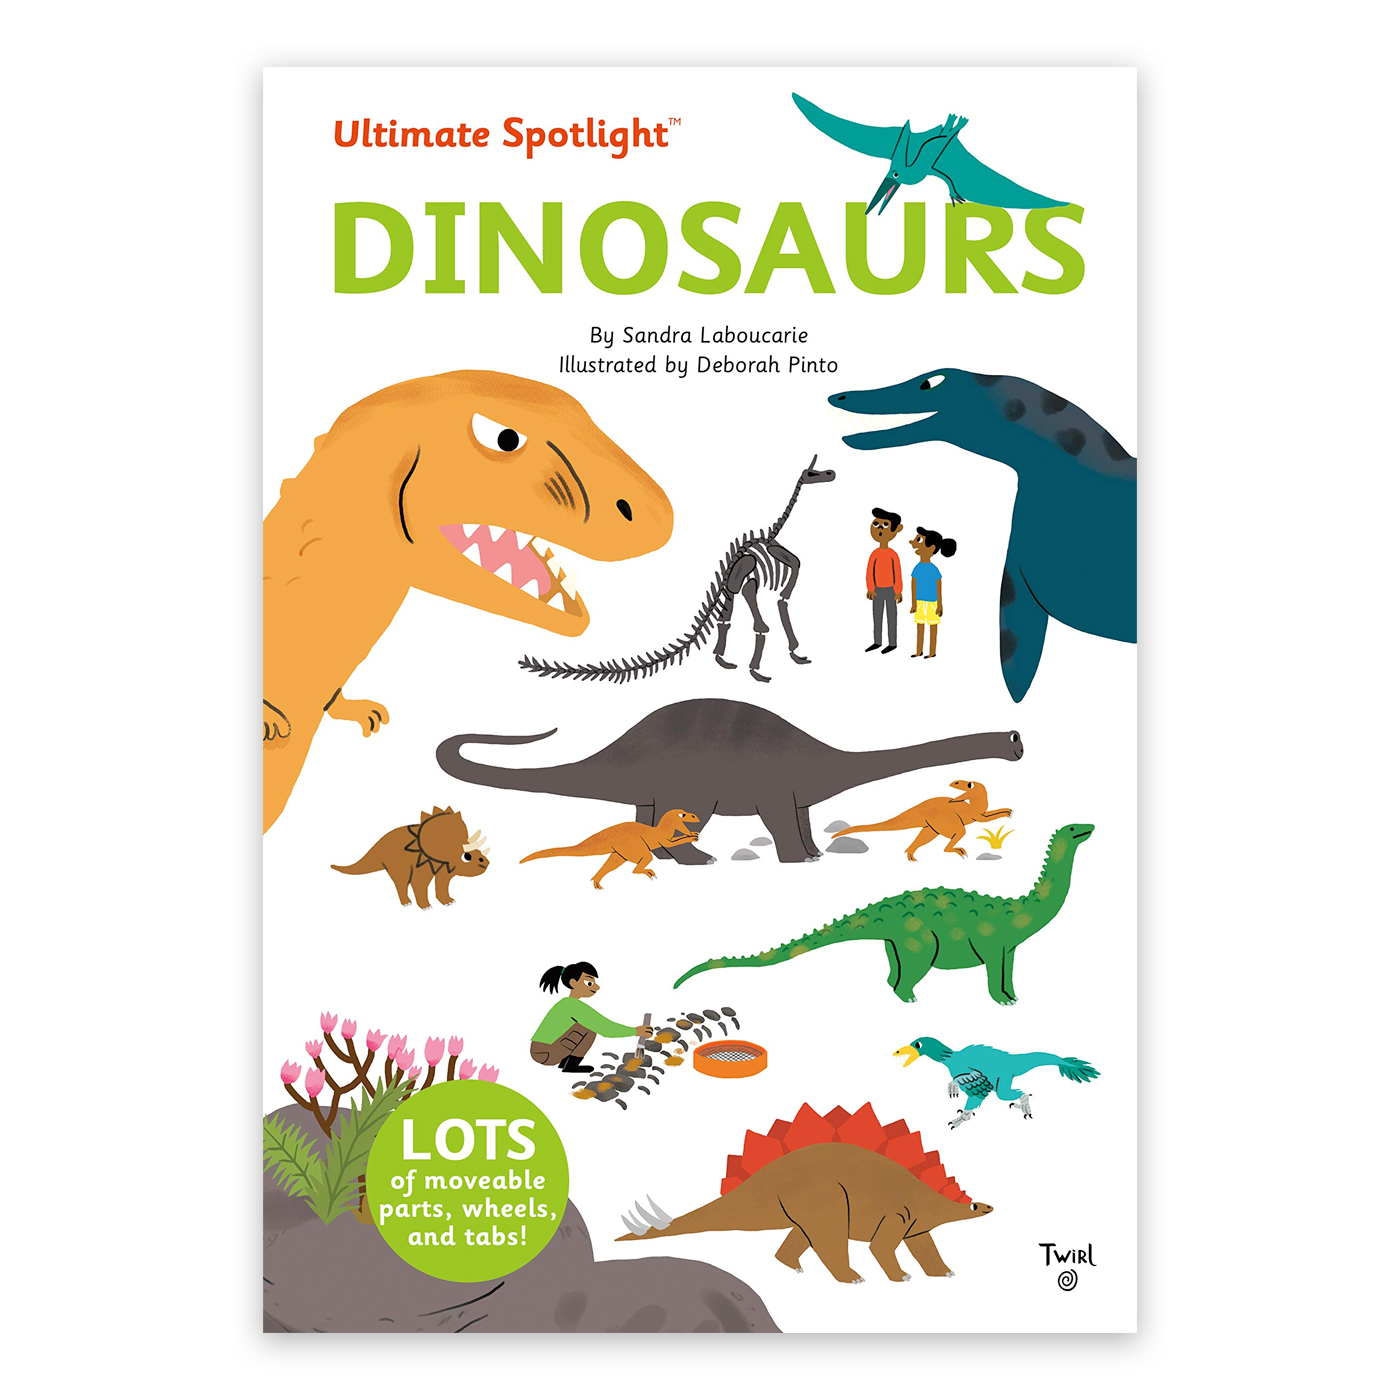  Ultimate Spotlight: Dinosaurs